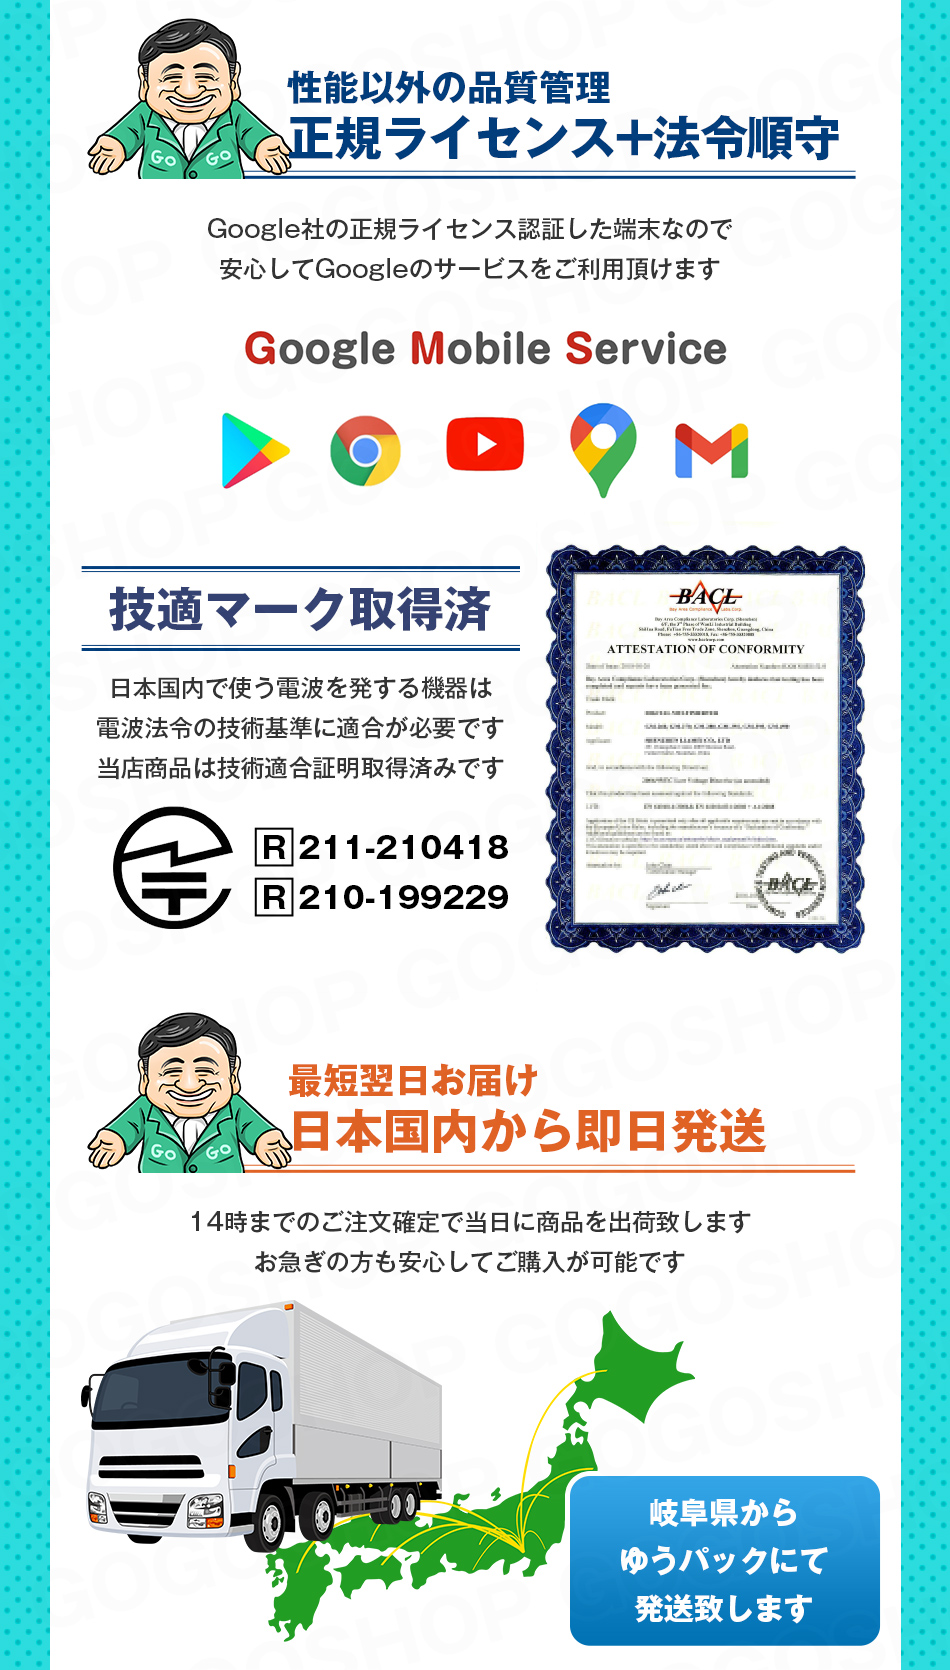 タブレットPC 1万円タブレット タブレット android